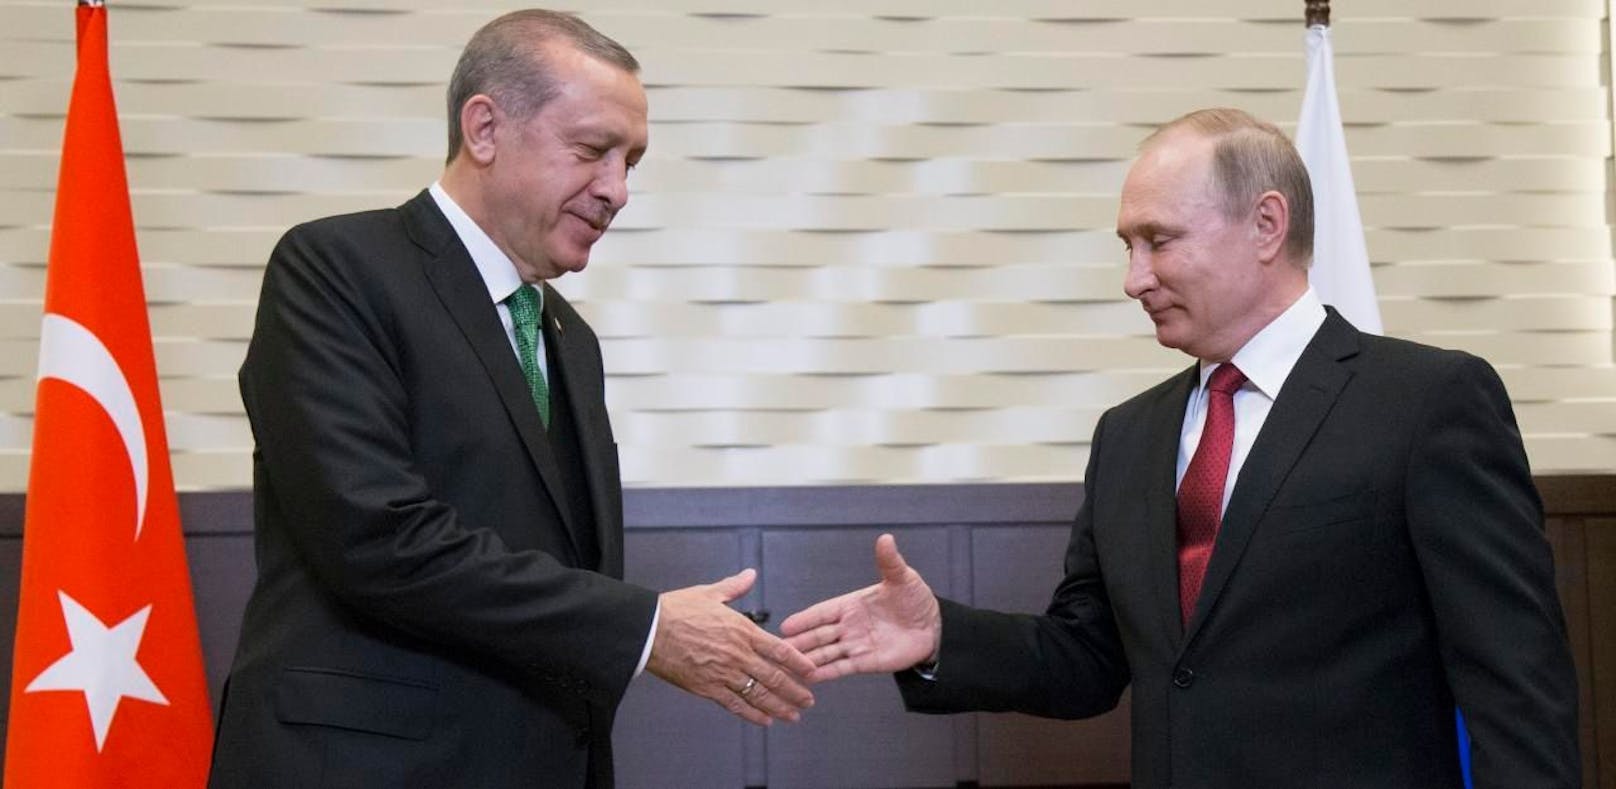 Haben Erdogan und Putin eine Vereinbarung getroffen? - News | heute.at